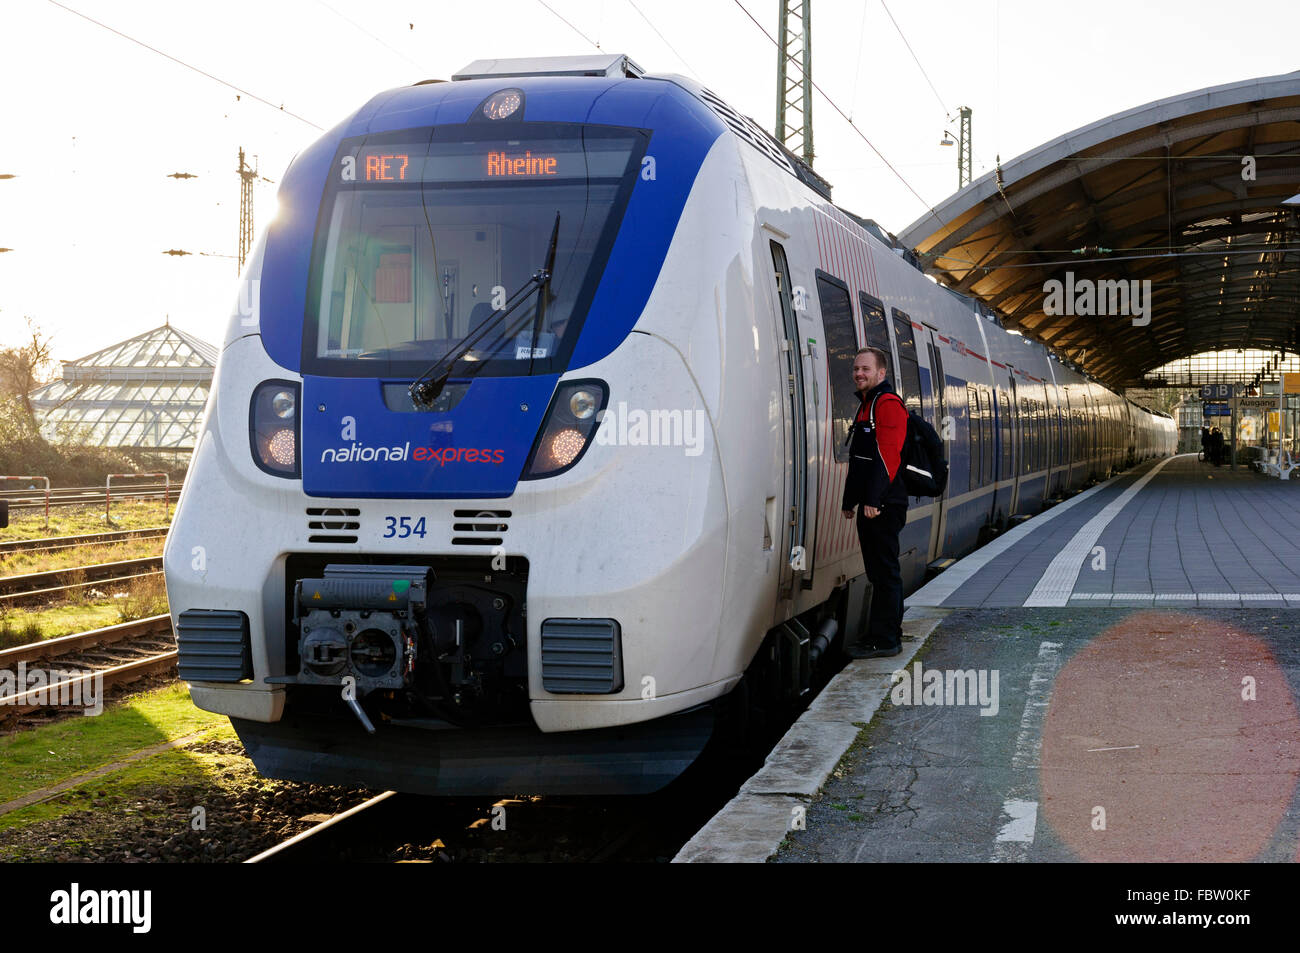 L'UEM Talent National Express train à Krefeld le RE7 service à Reine, de l'Allemagne. Banque D'Images